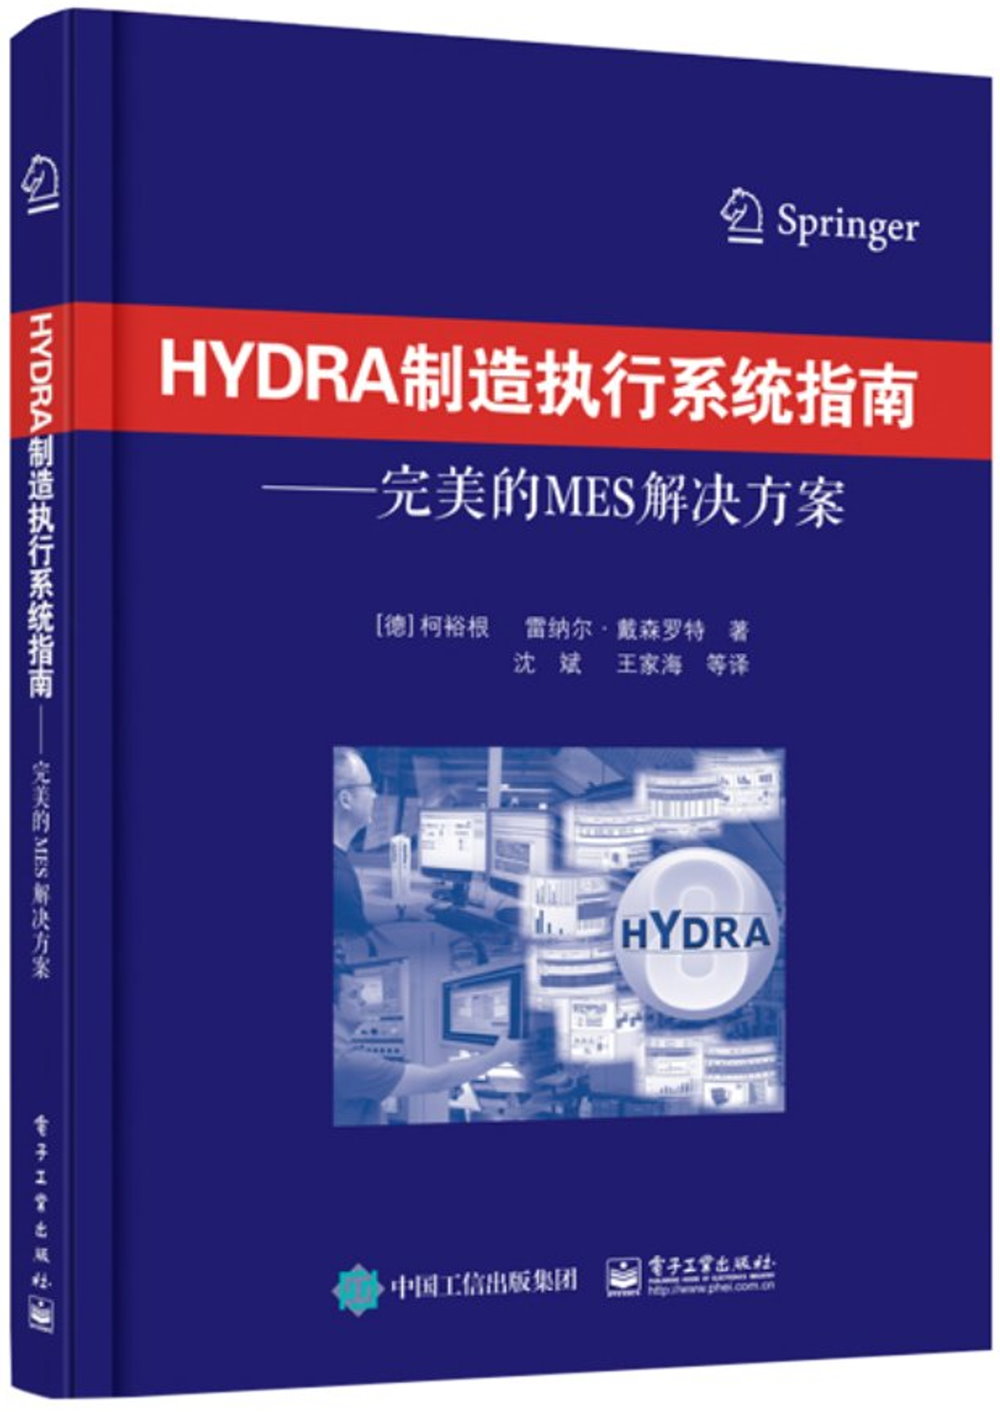 HYDRA制造執行系統指南--完美的MES解決方案